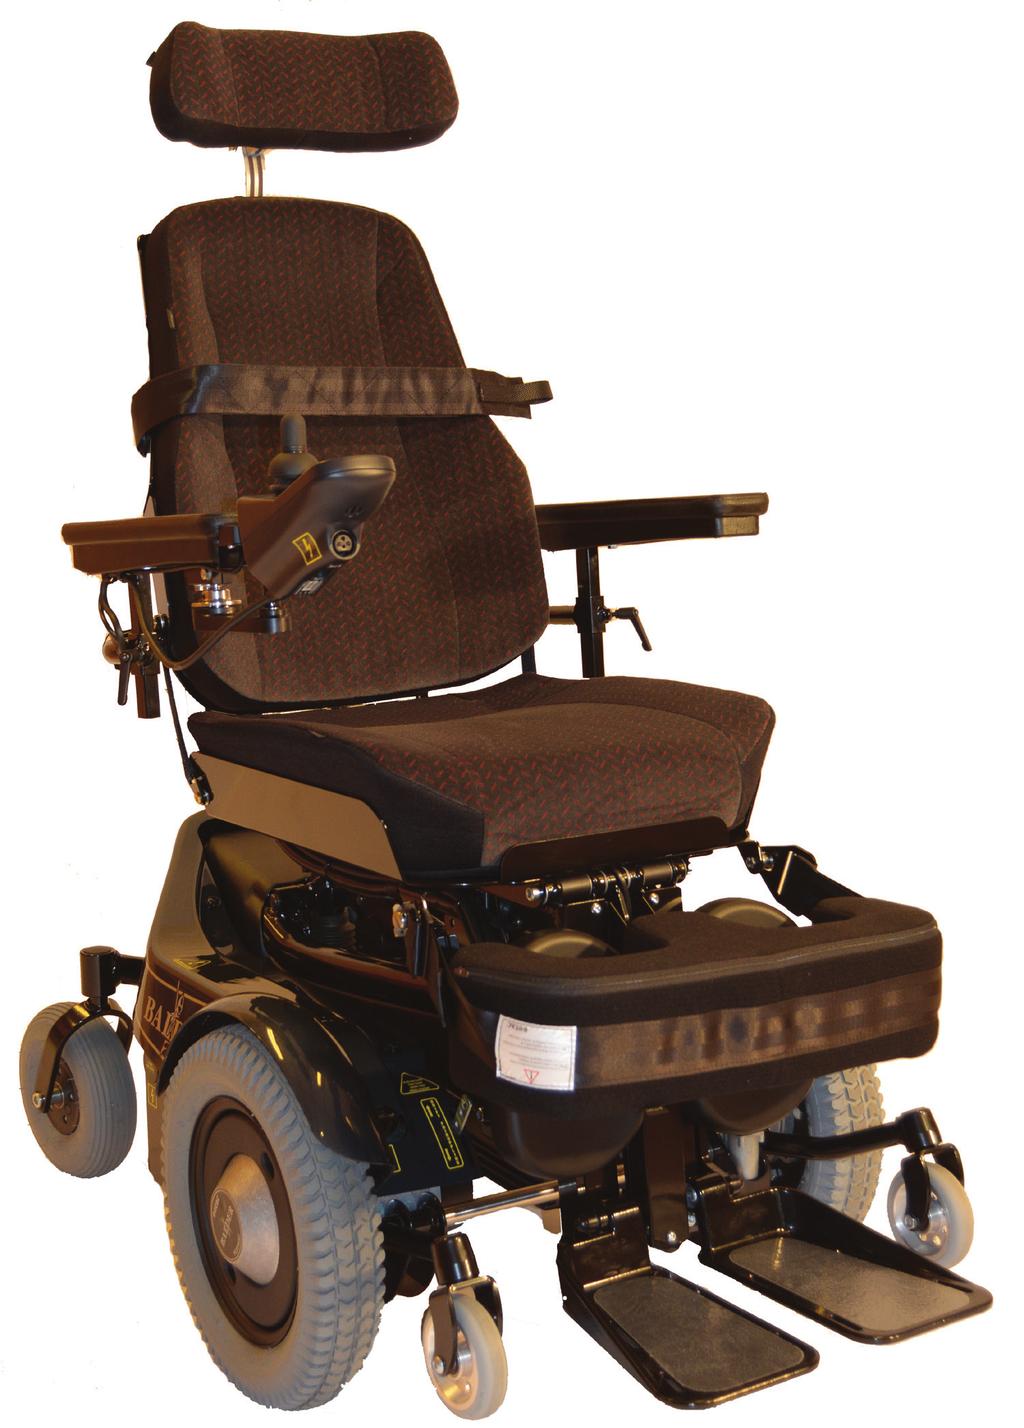 Baldertech Balder Finesse - forhjulsdrevet elektrisk rullstol, leveres også med ståfunksjon Baldertech Balder Finesse er lett å manøvrere.